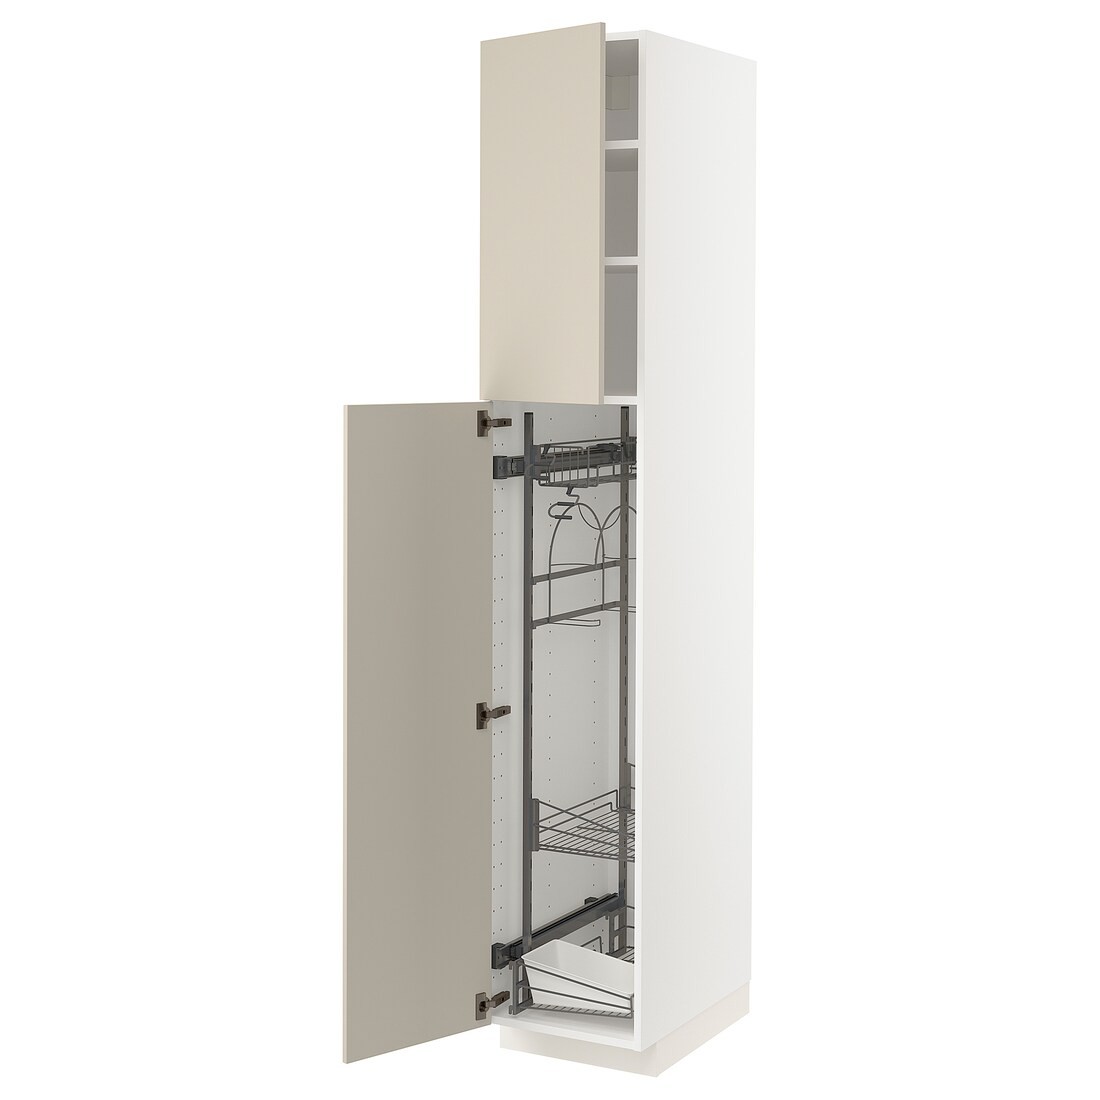 IKEA METOD МЕТОД Висока шафа з відділенням для аксесуарів для прибирання, білий / Havstorp бежевий, 40x60x220 см 89462974 894.629.74